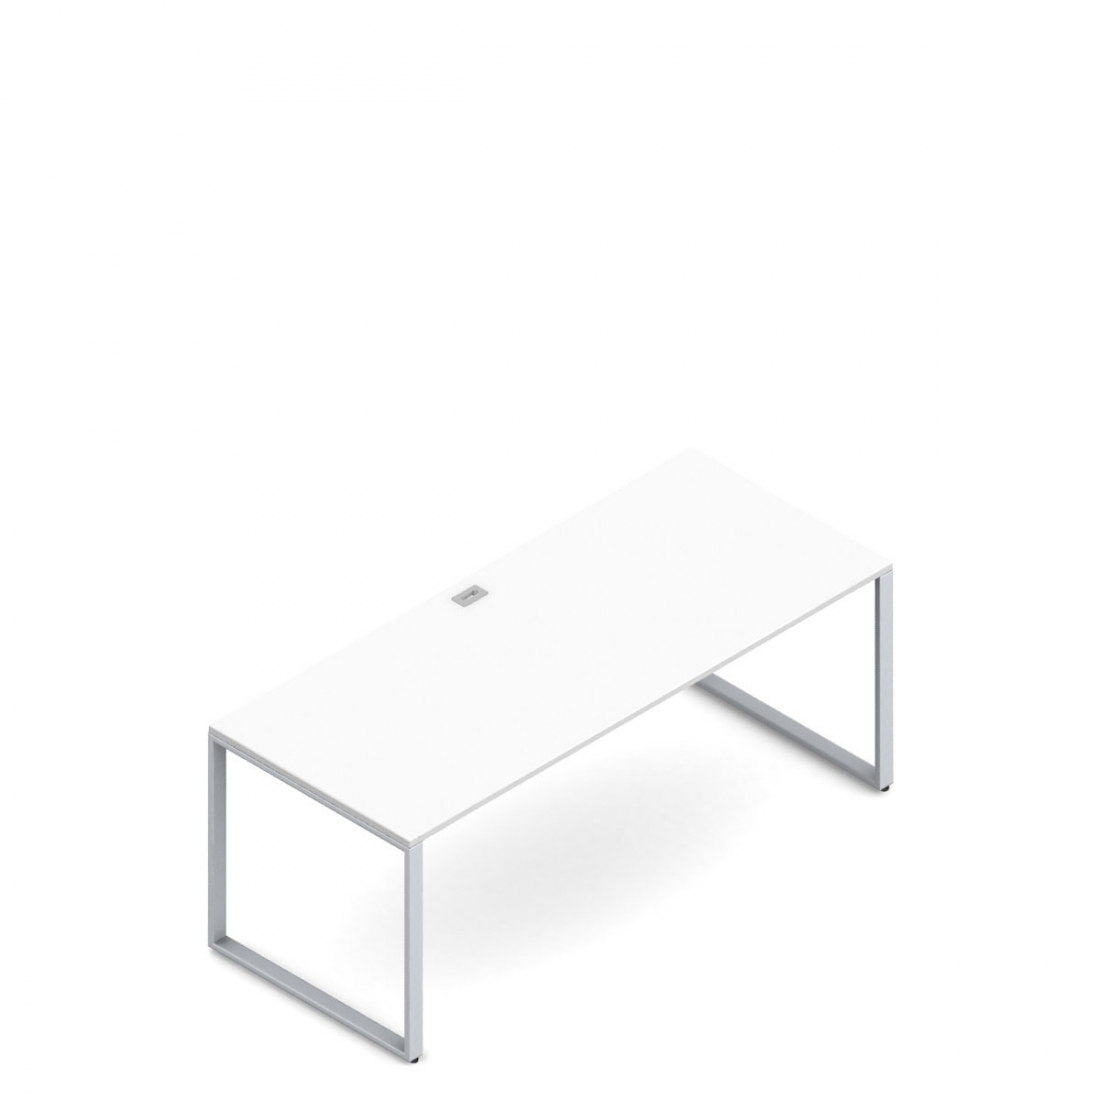 Freestanding Desk, Metal Legs, 72”W x30”D